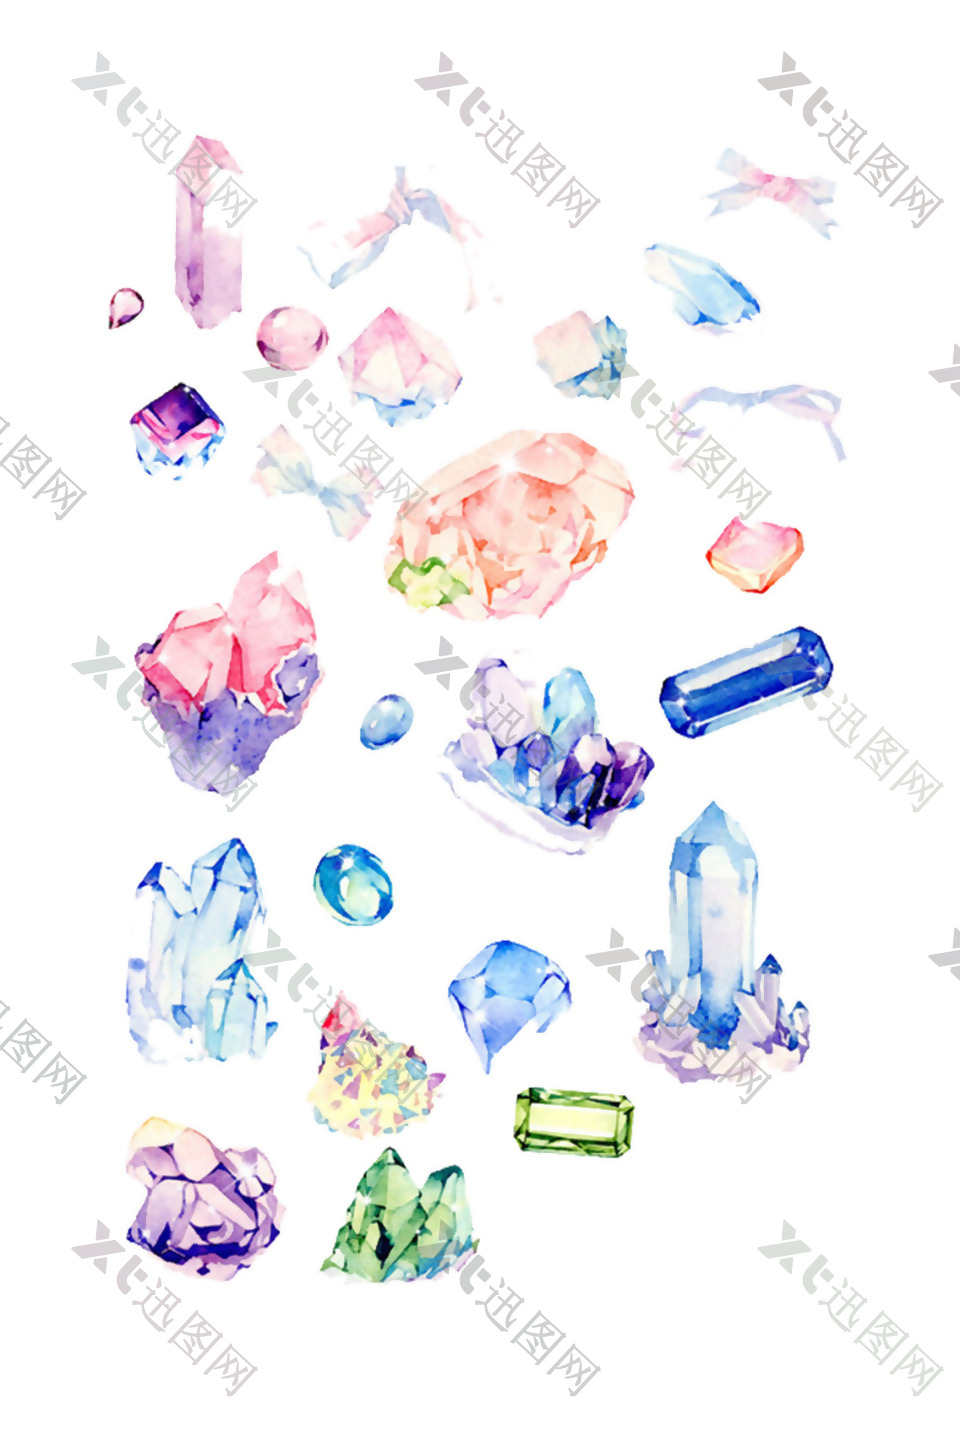 钻石水晶矿石图案